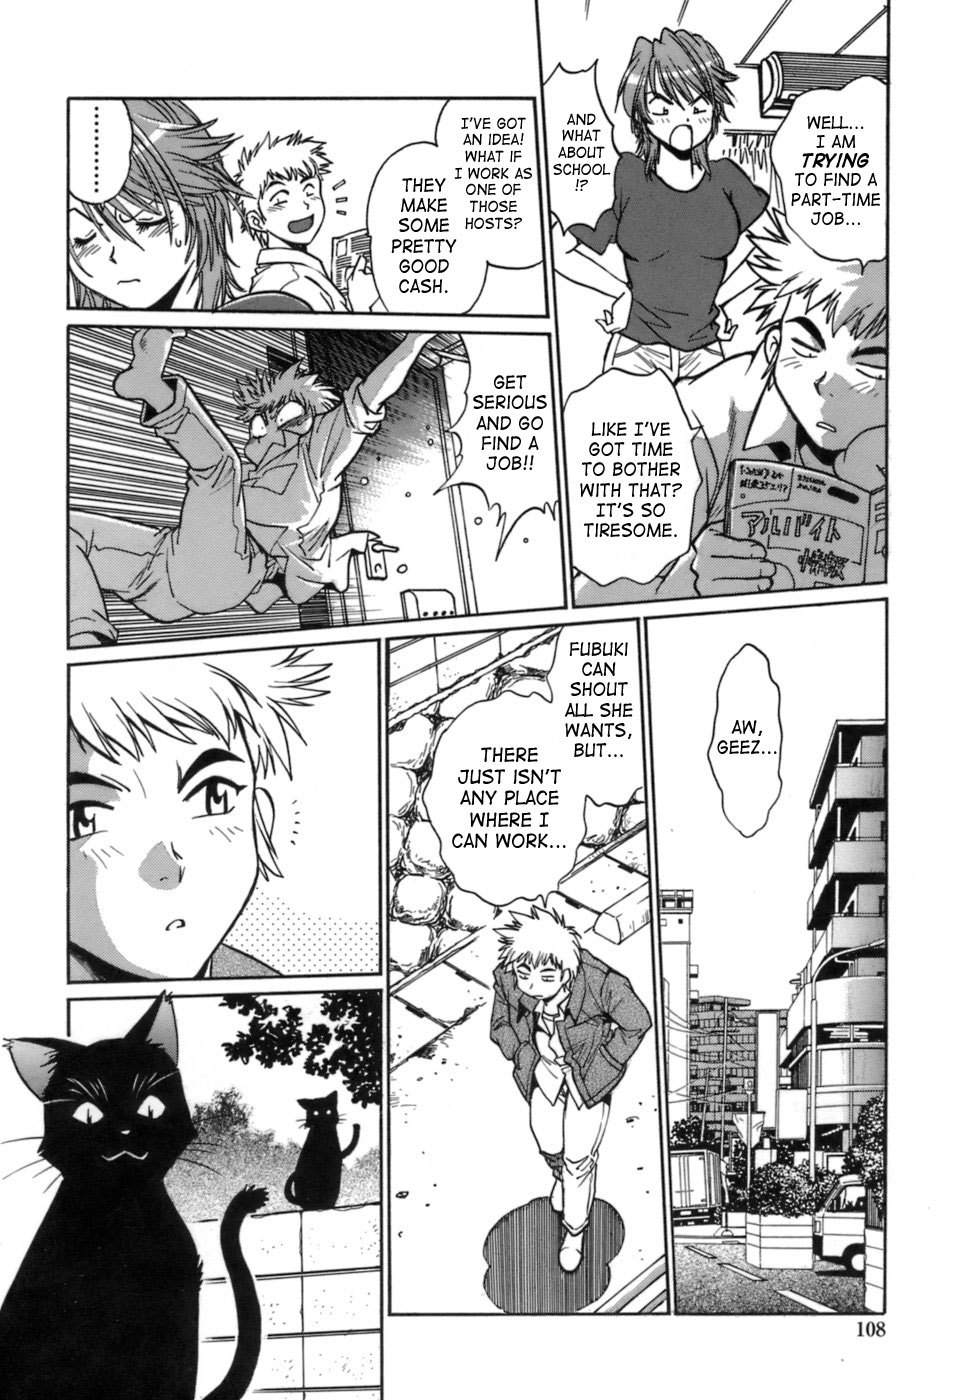 Tail Chaser Vol.1 105 hentai manga